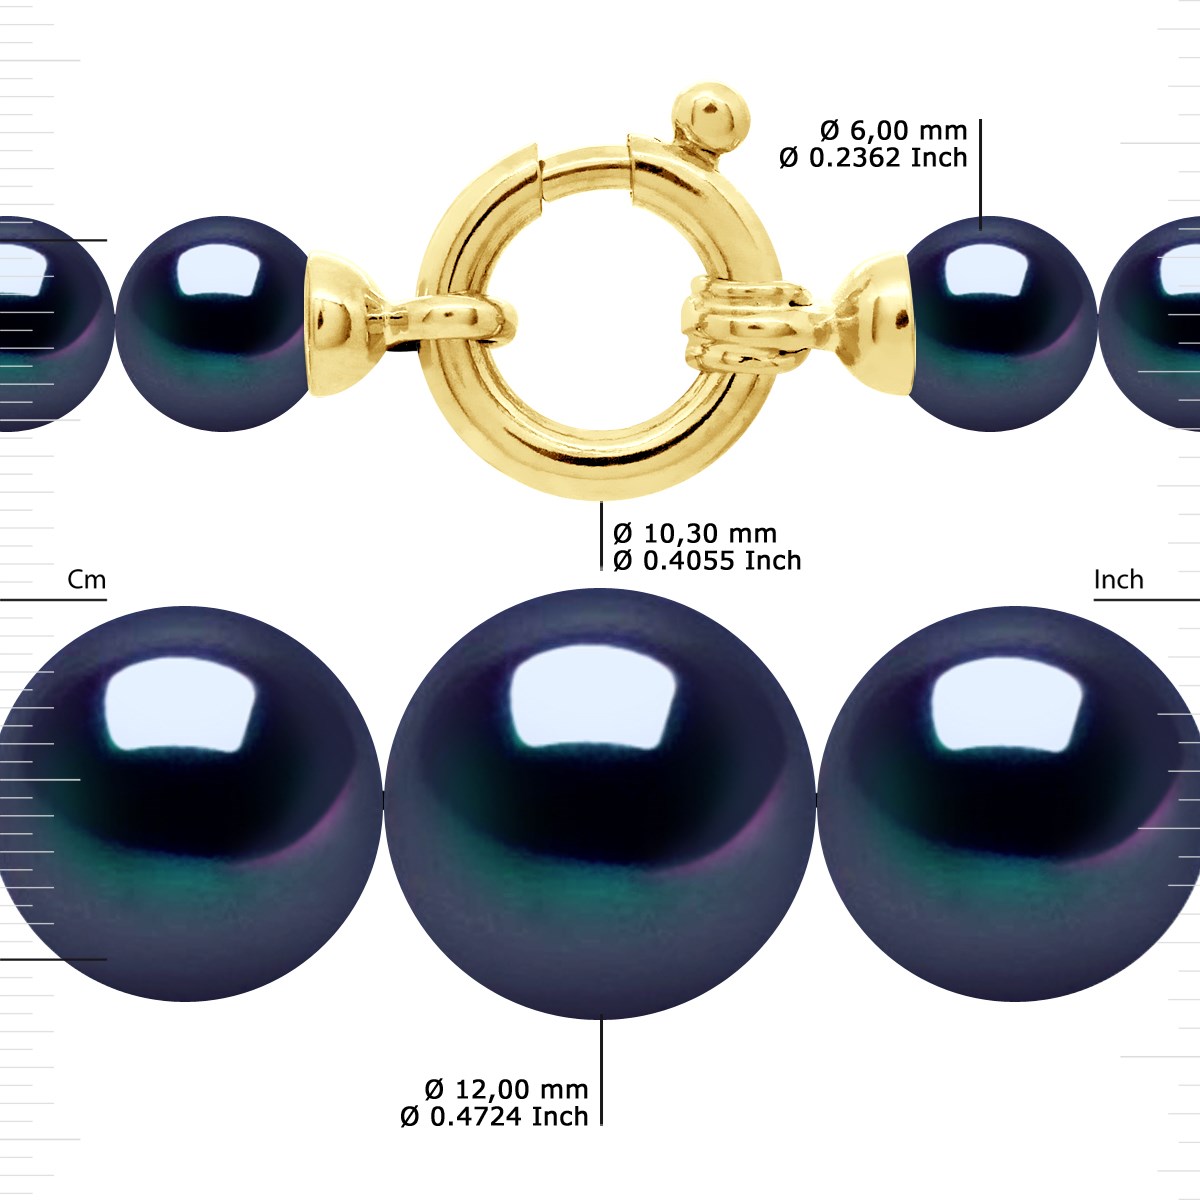 Collier Rang 'Princesse' - Véritables Perles de Culture d'Eau Douce Rondes de 12 à 6 mm - Black Tahiti - Or Jaune 750 Millièmes - vue 3